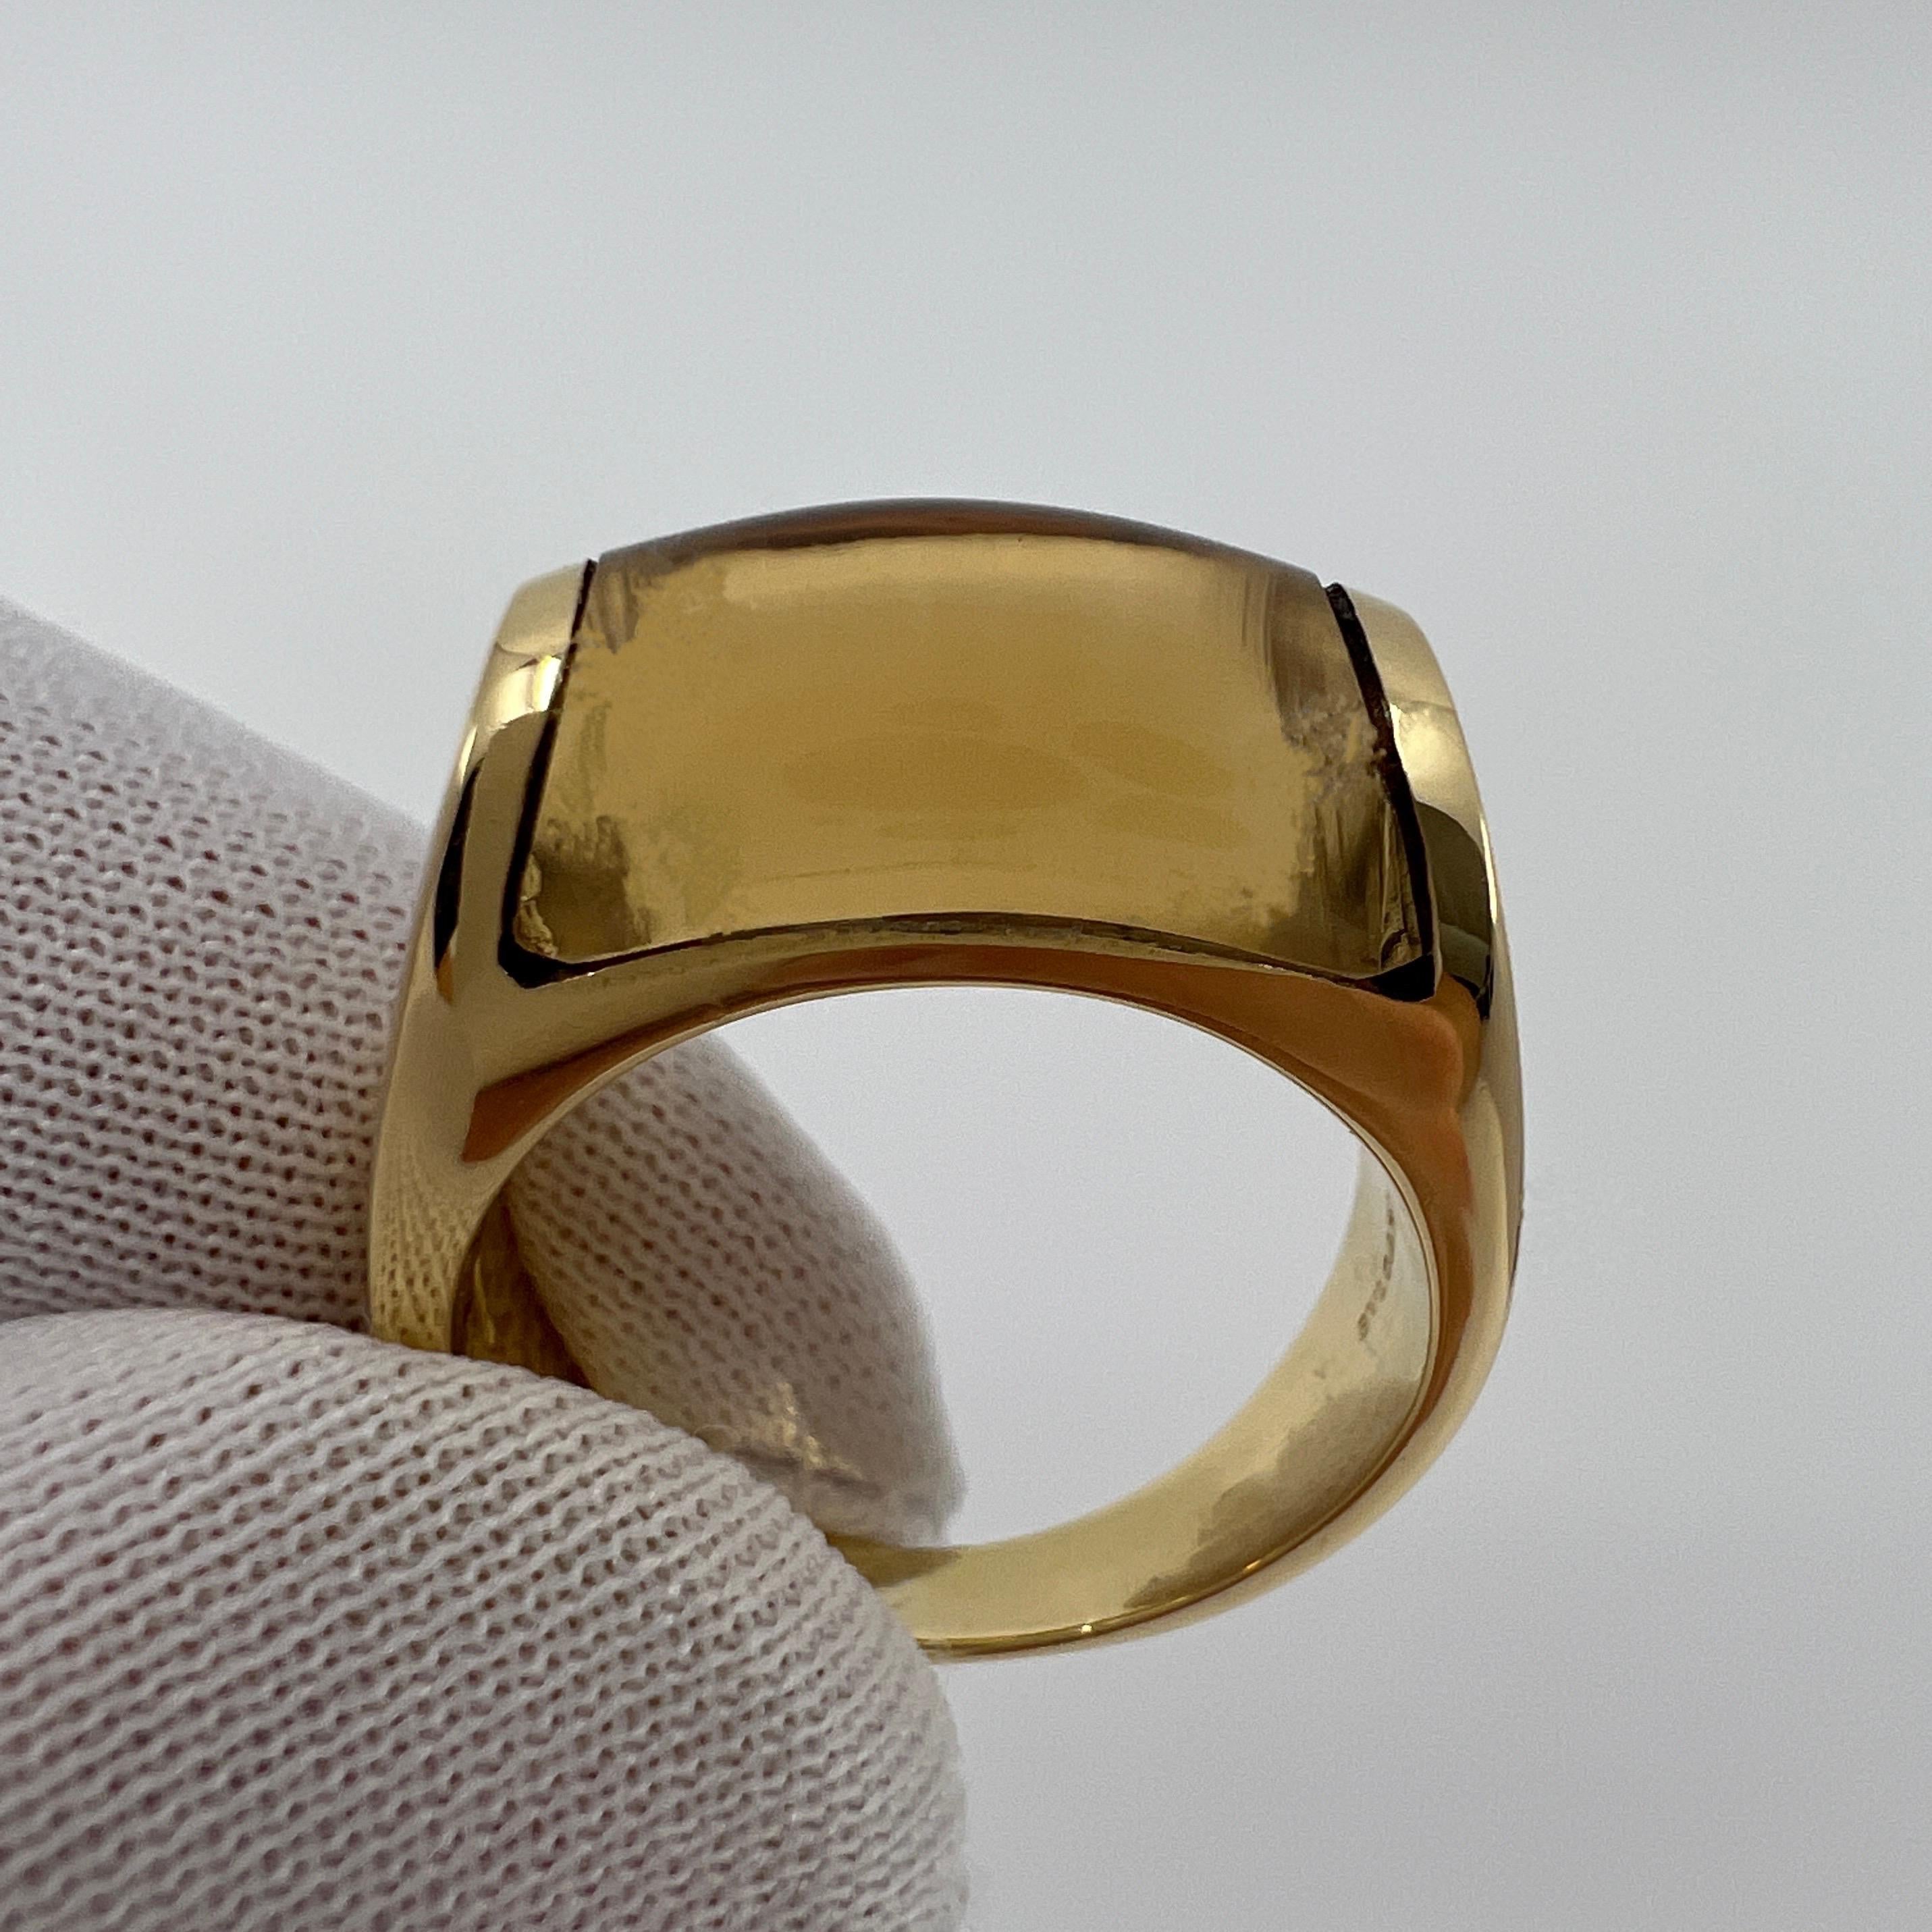 Rare Bvlgari Bulgari Tronchetto 18k Yellow Gold Yellow Citrine Ring with Box For Sale 7